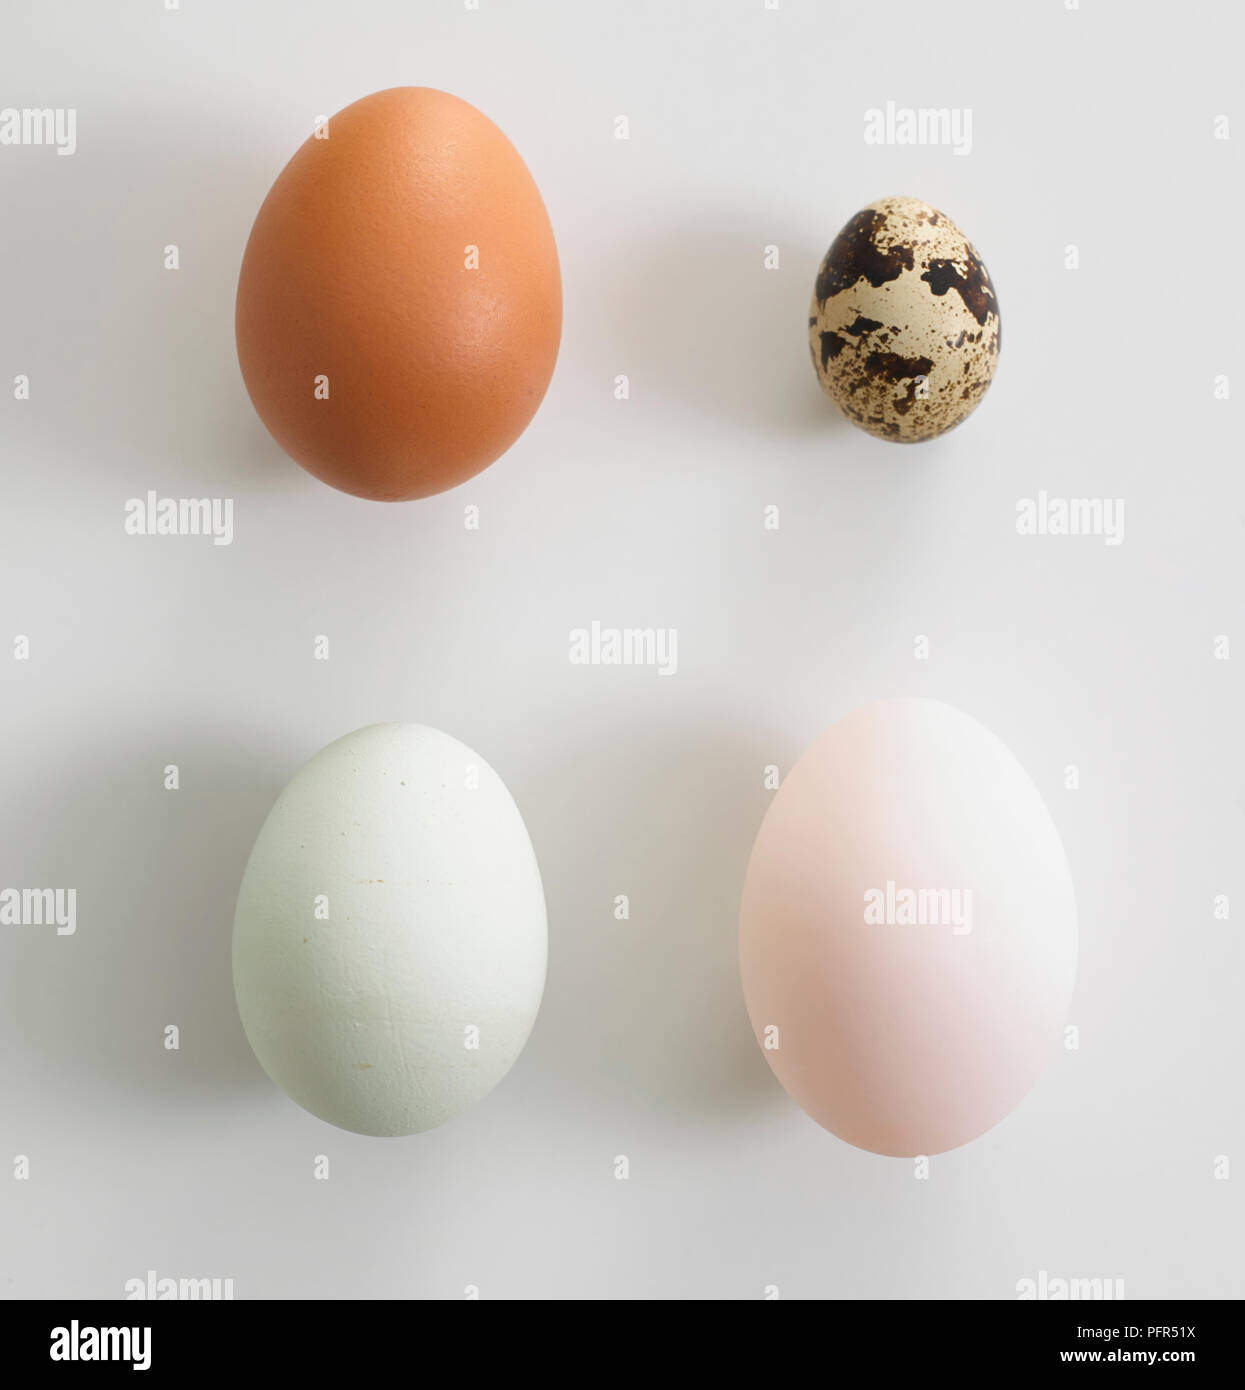 Selección de huevos, los huevos de gallina de color marrón y blanco, huevos de pato, huevo de codorniz Foto de stock